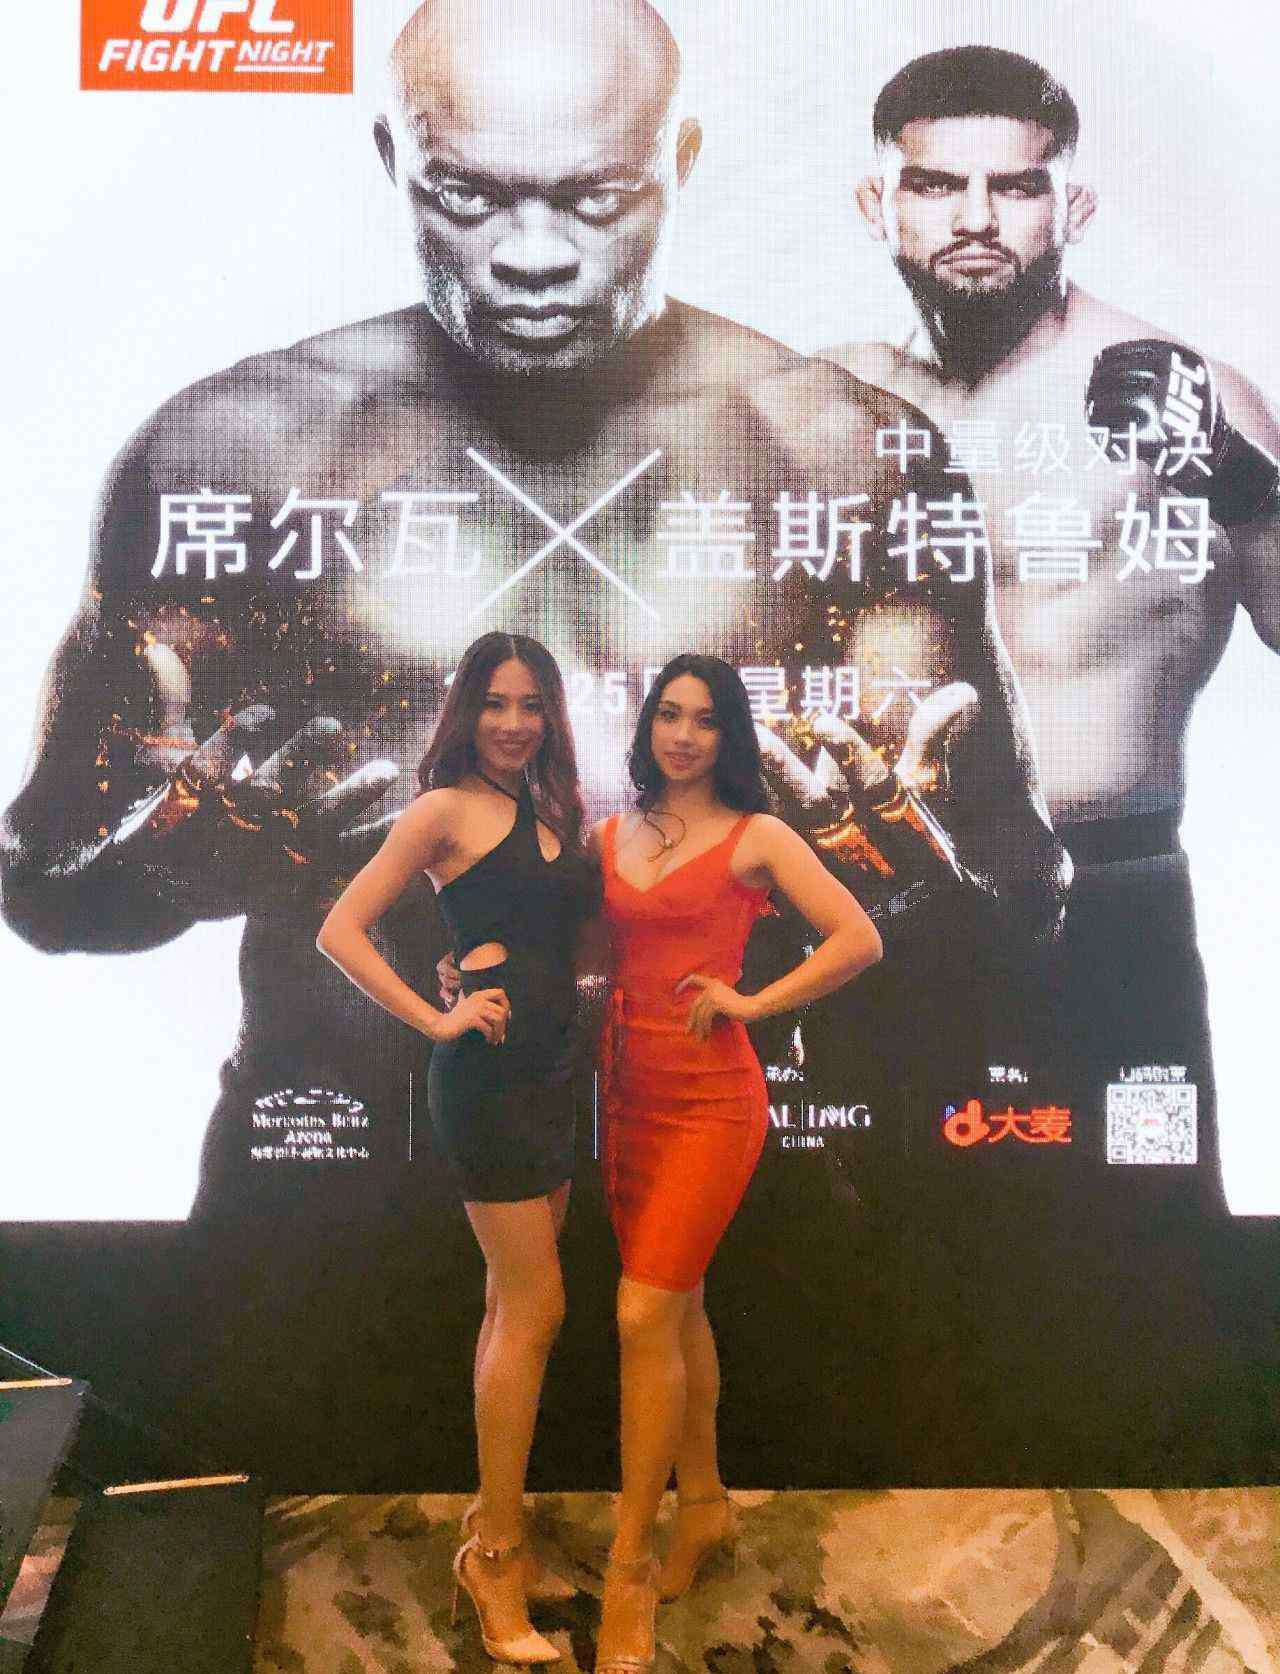 ufc举牌女郎 UFC宣布正式登陆上海 中国举牌女郎率先惊艳亮相